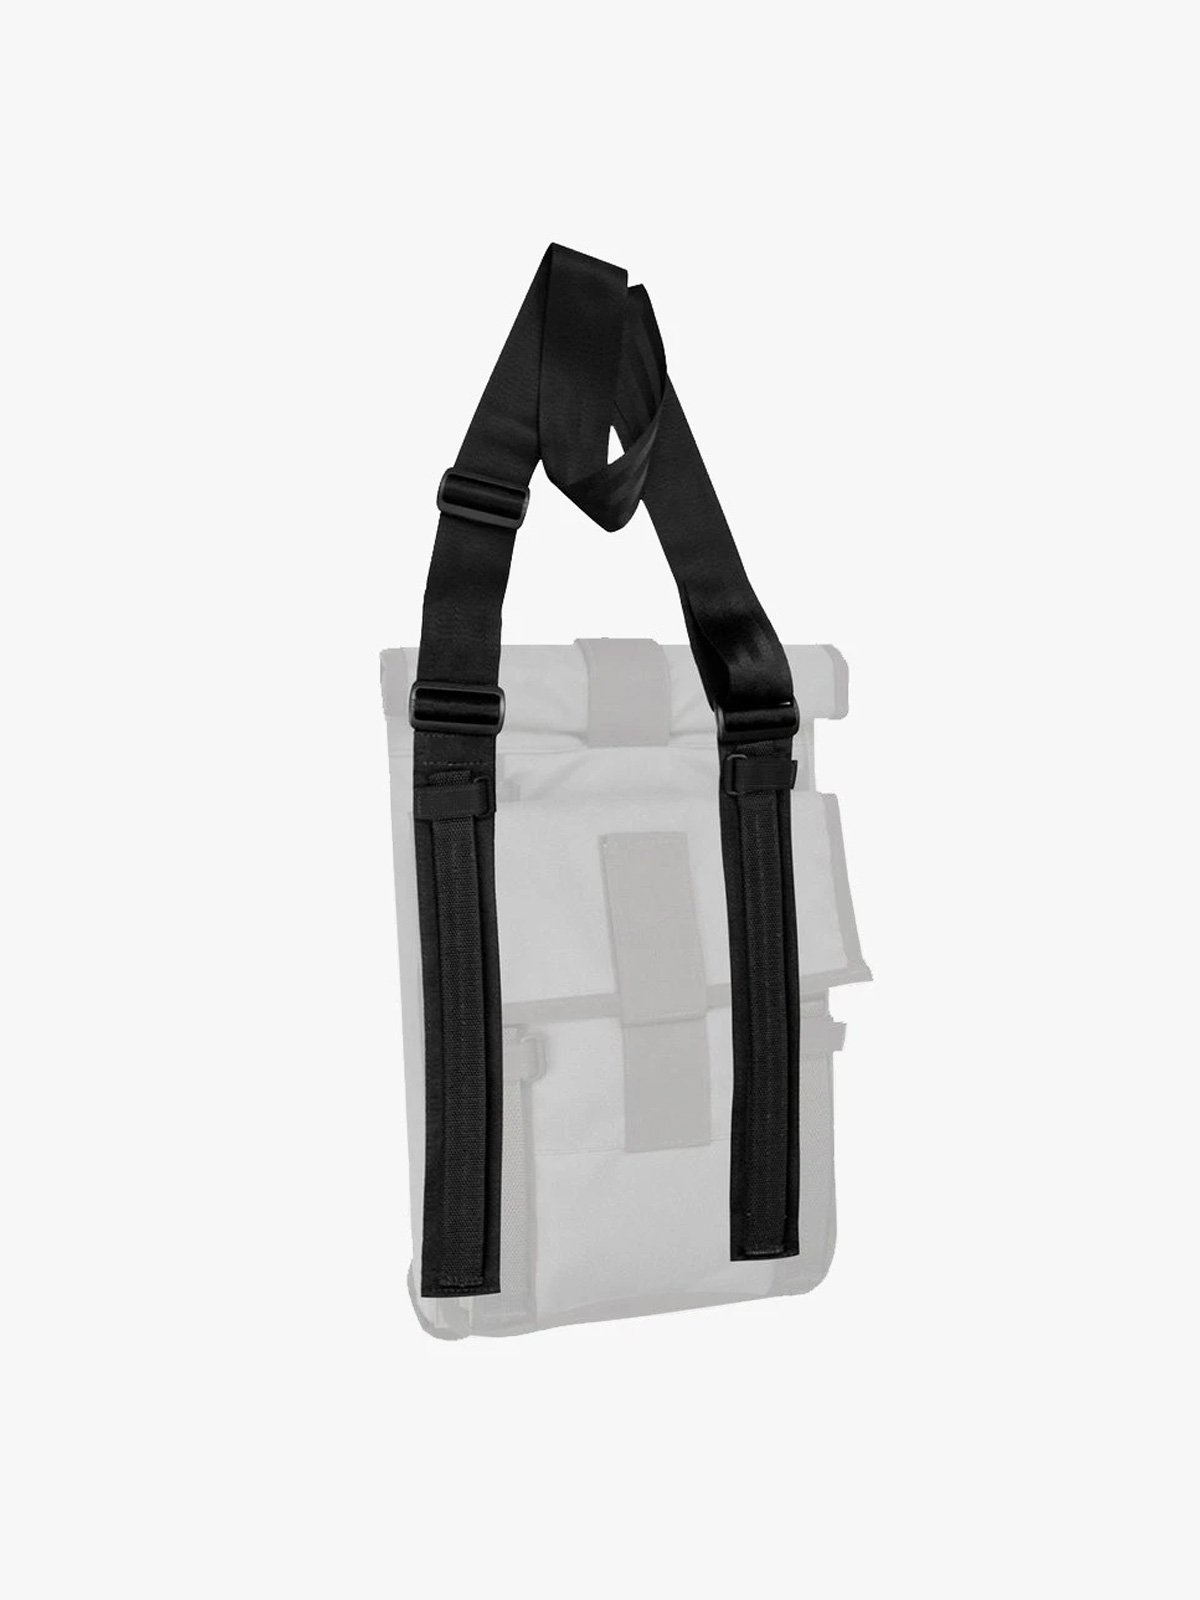 Arkiv Shoulder Strap by Mission Workshop - Wetterfeste Taschen und technische Bekleidung - San Francisco & Los Angeles - Für die Ewigkeit gebaut - Garantiert